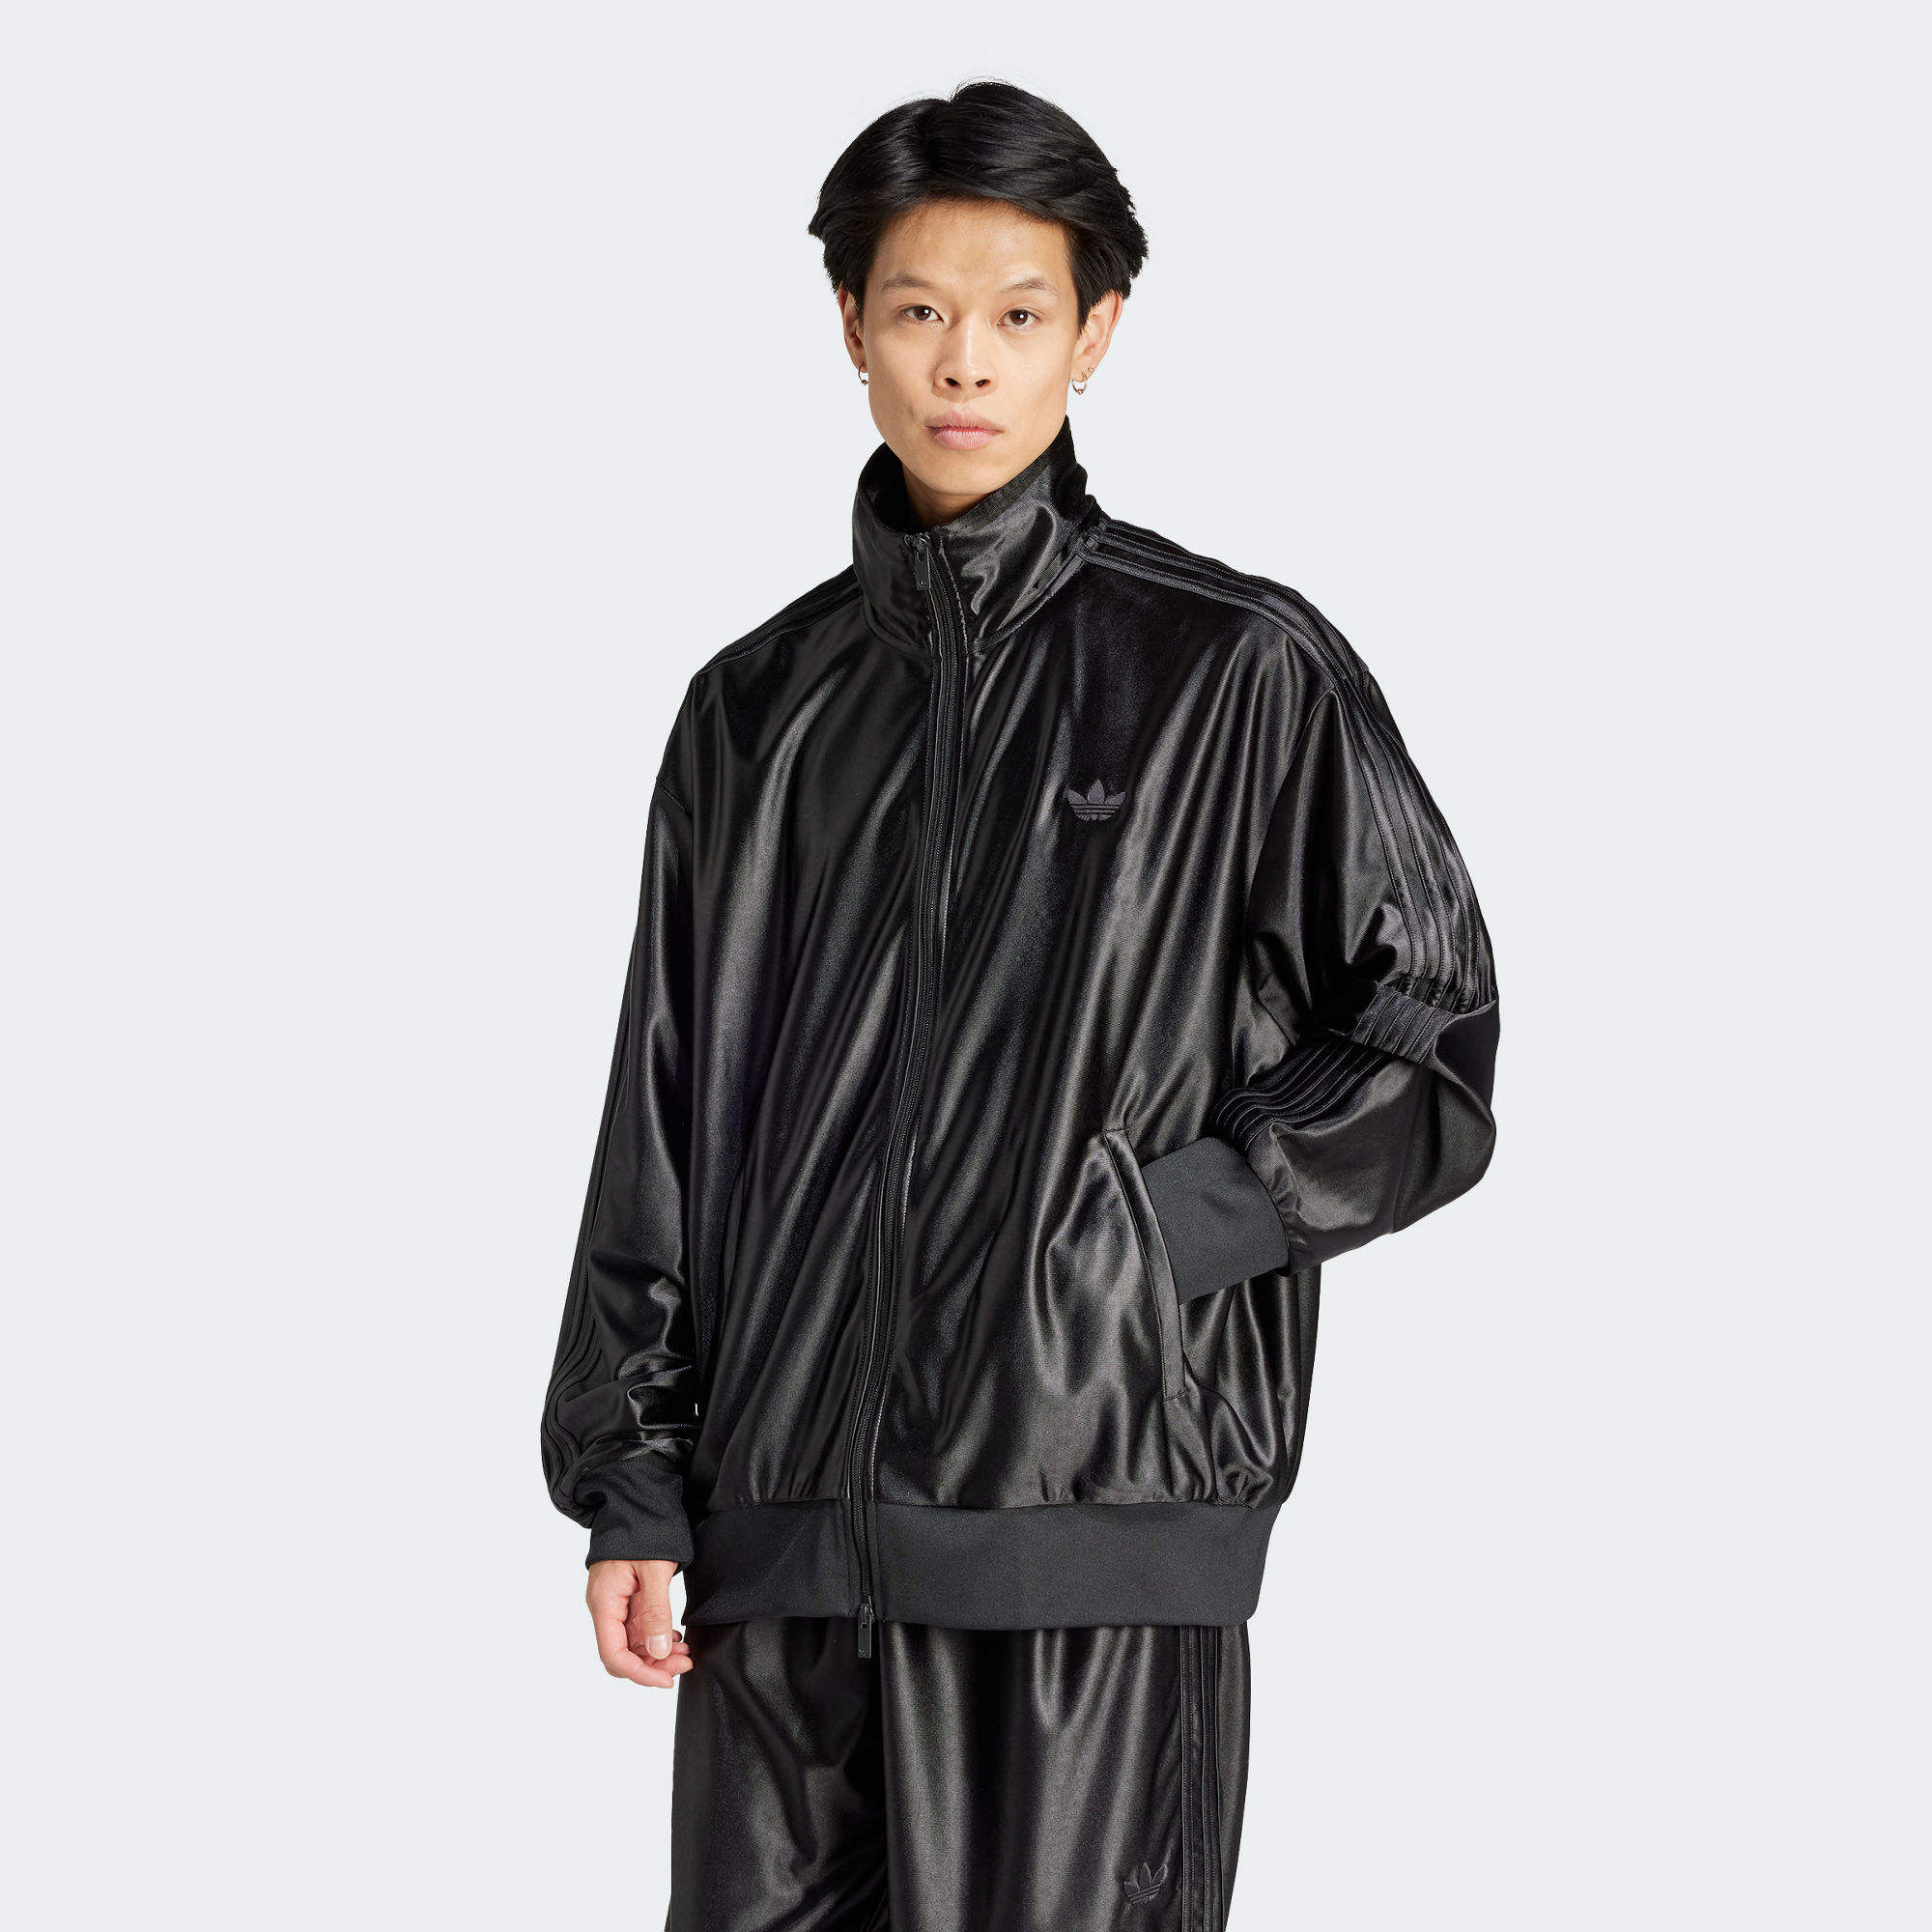 加大碼FIREBIRD 運動上衣- 黑色| 男子| adidas(愛迪達)香港官方網上商店